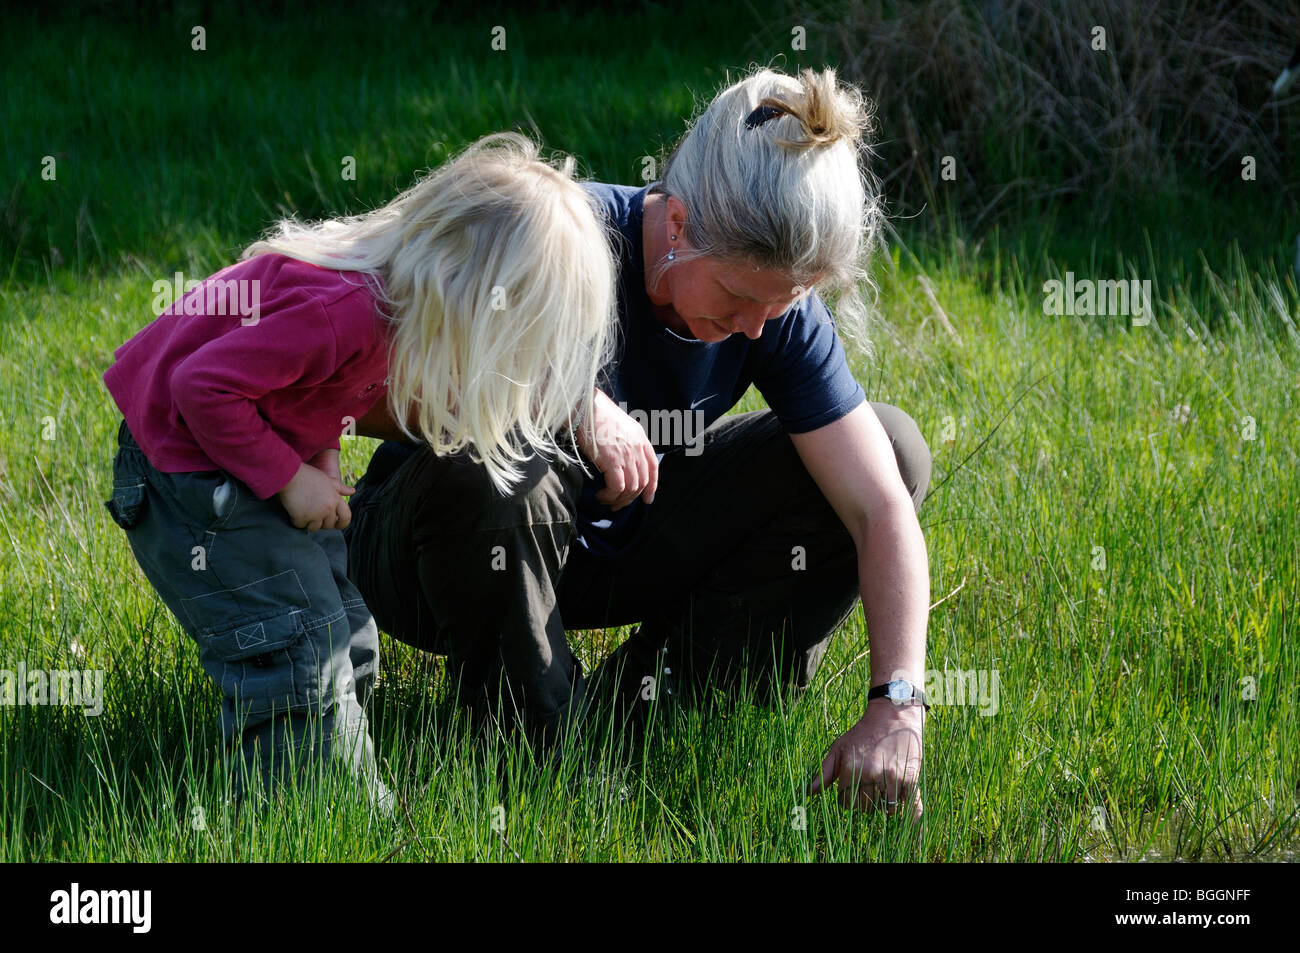 Stock Foto von einer Mutter und ihre 3 Jahre alte Tochter Blick auf Insekten, die versteckt in den Rasen. Stockfoto